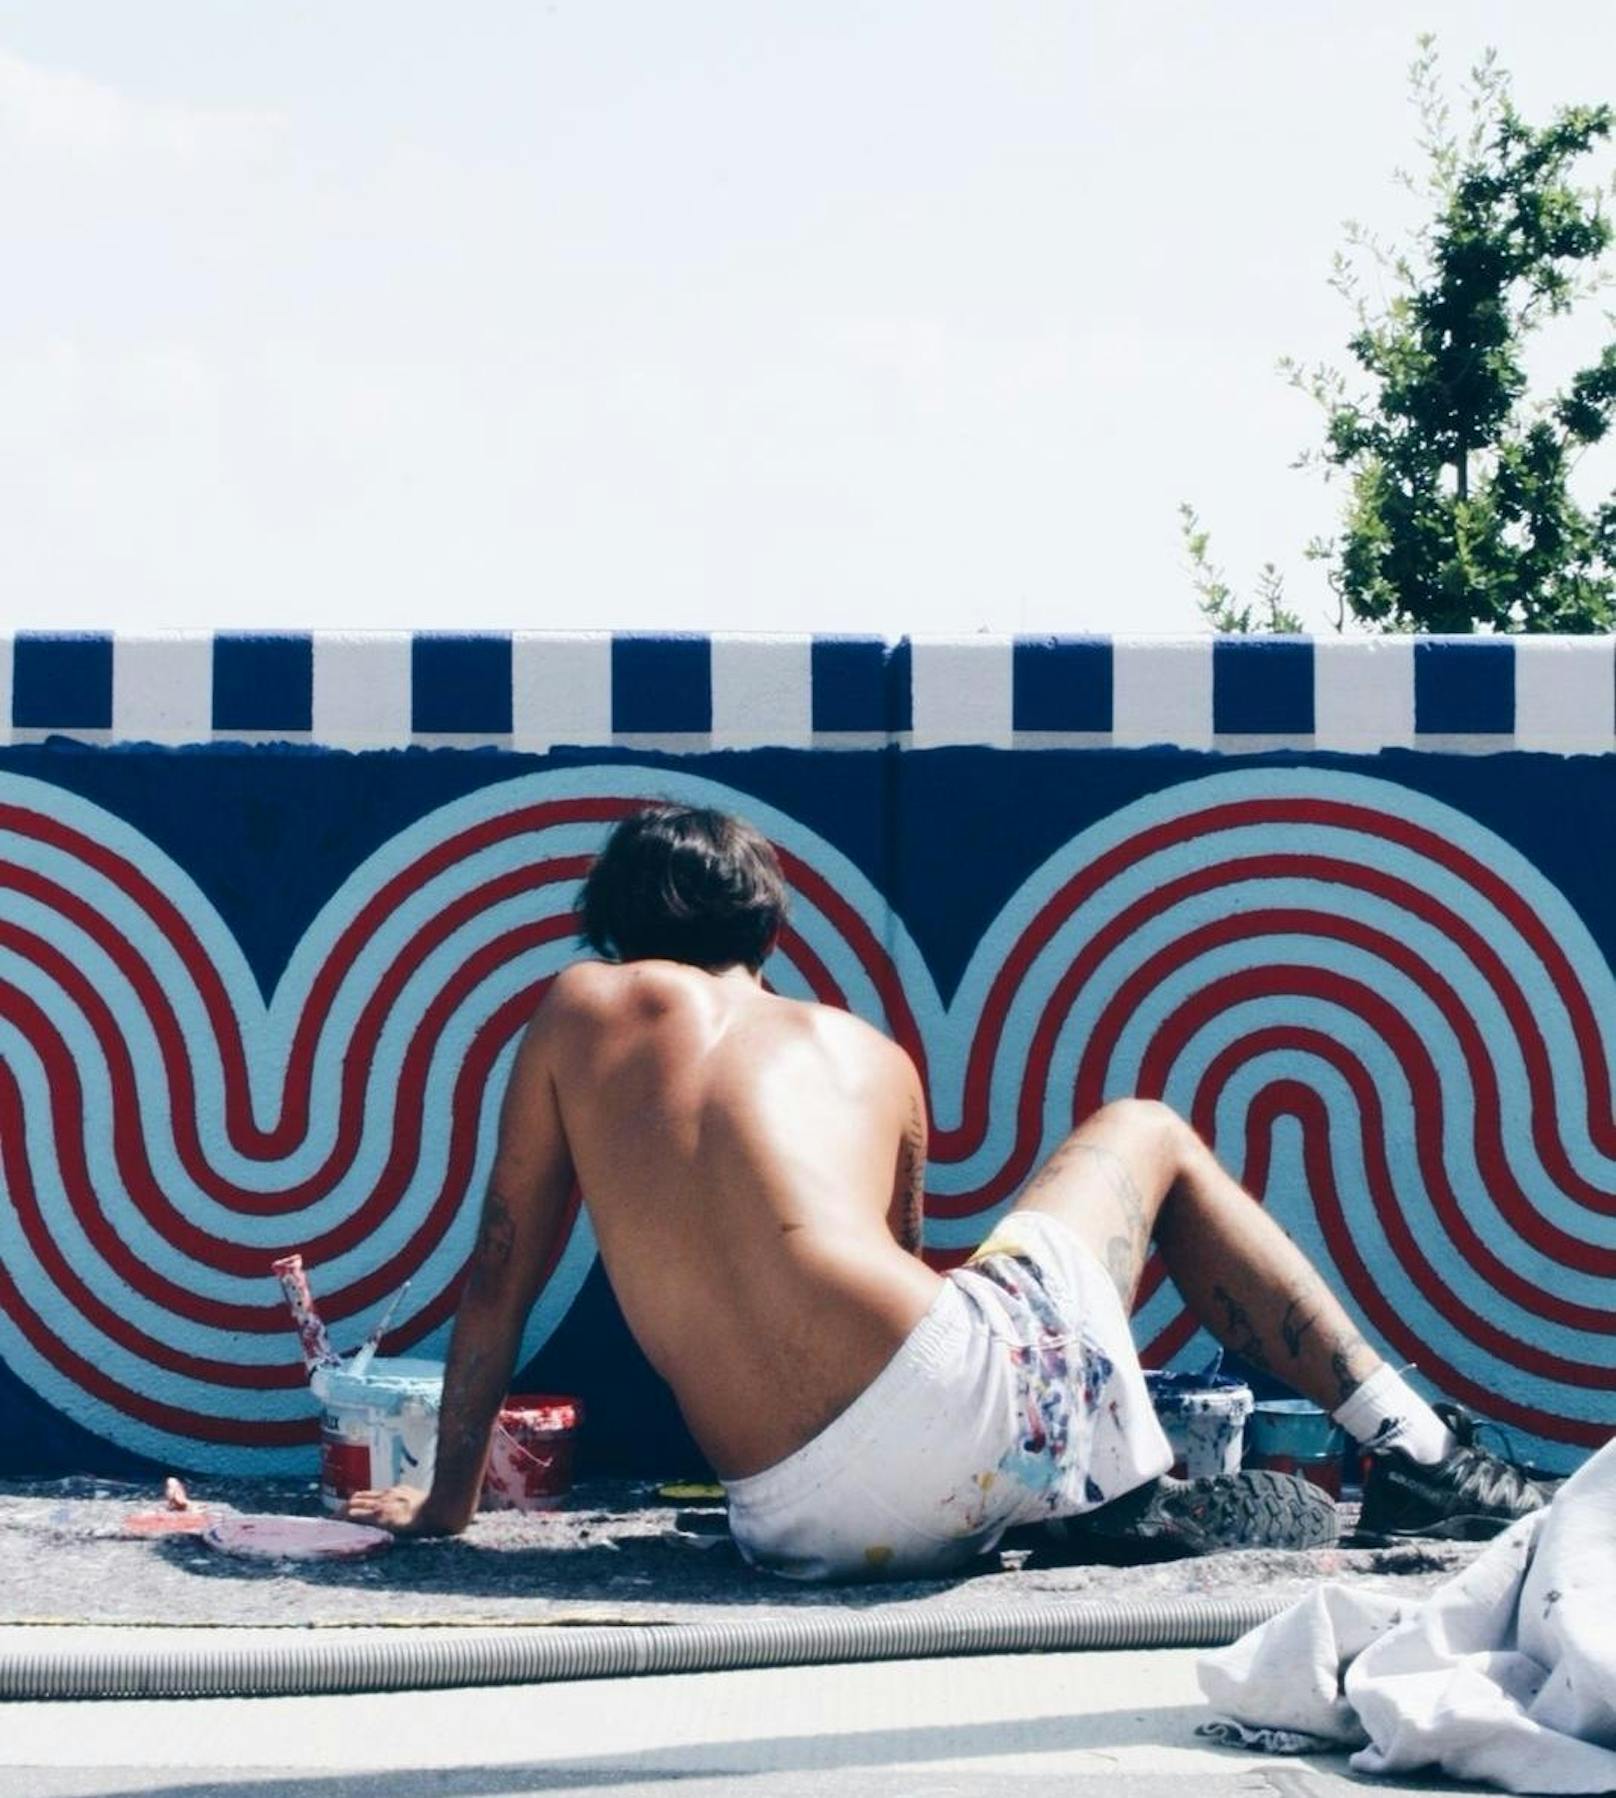 Wellen, bunte Kreise und Streifen-Muster: Künstler realisieren das Projekt von Sagmeister & Walsh in der Seestadt Aspern. Es geht darum, denn öffentlichen Raum zu verschönern und so für mehr Wohlbefinden zu sorgen.